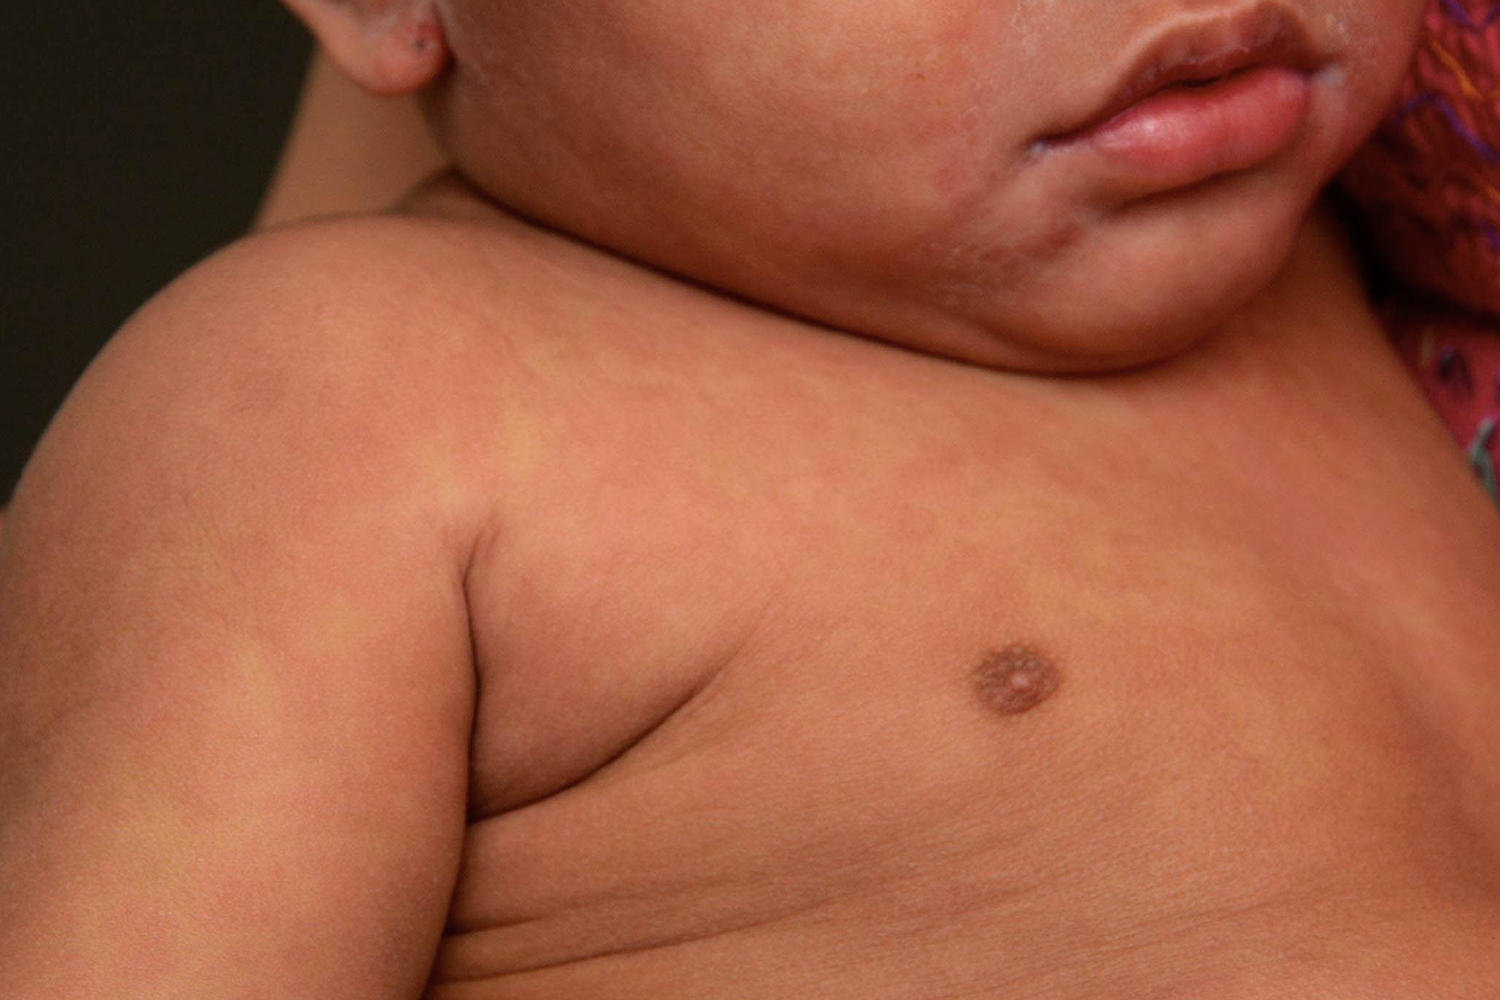 example of rash on brown or black skin